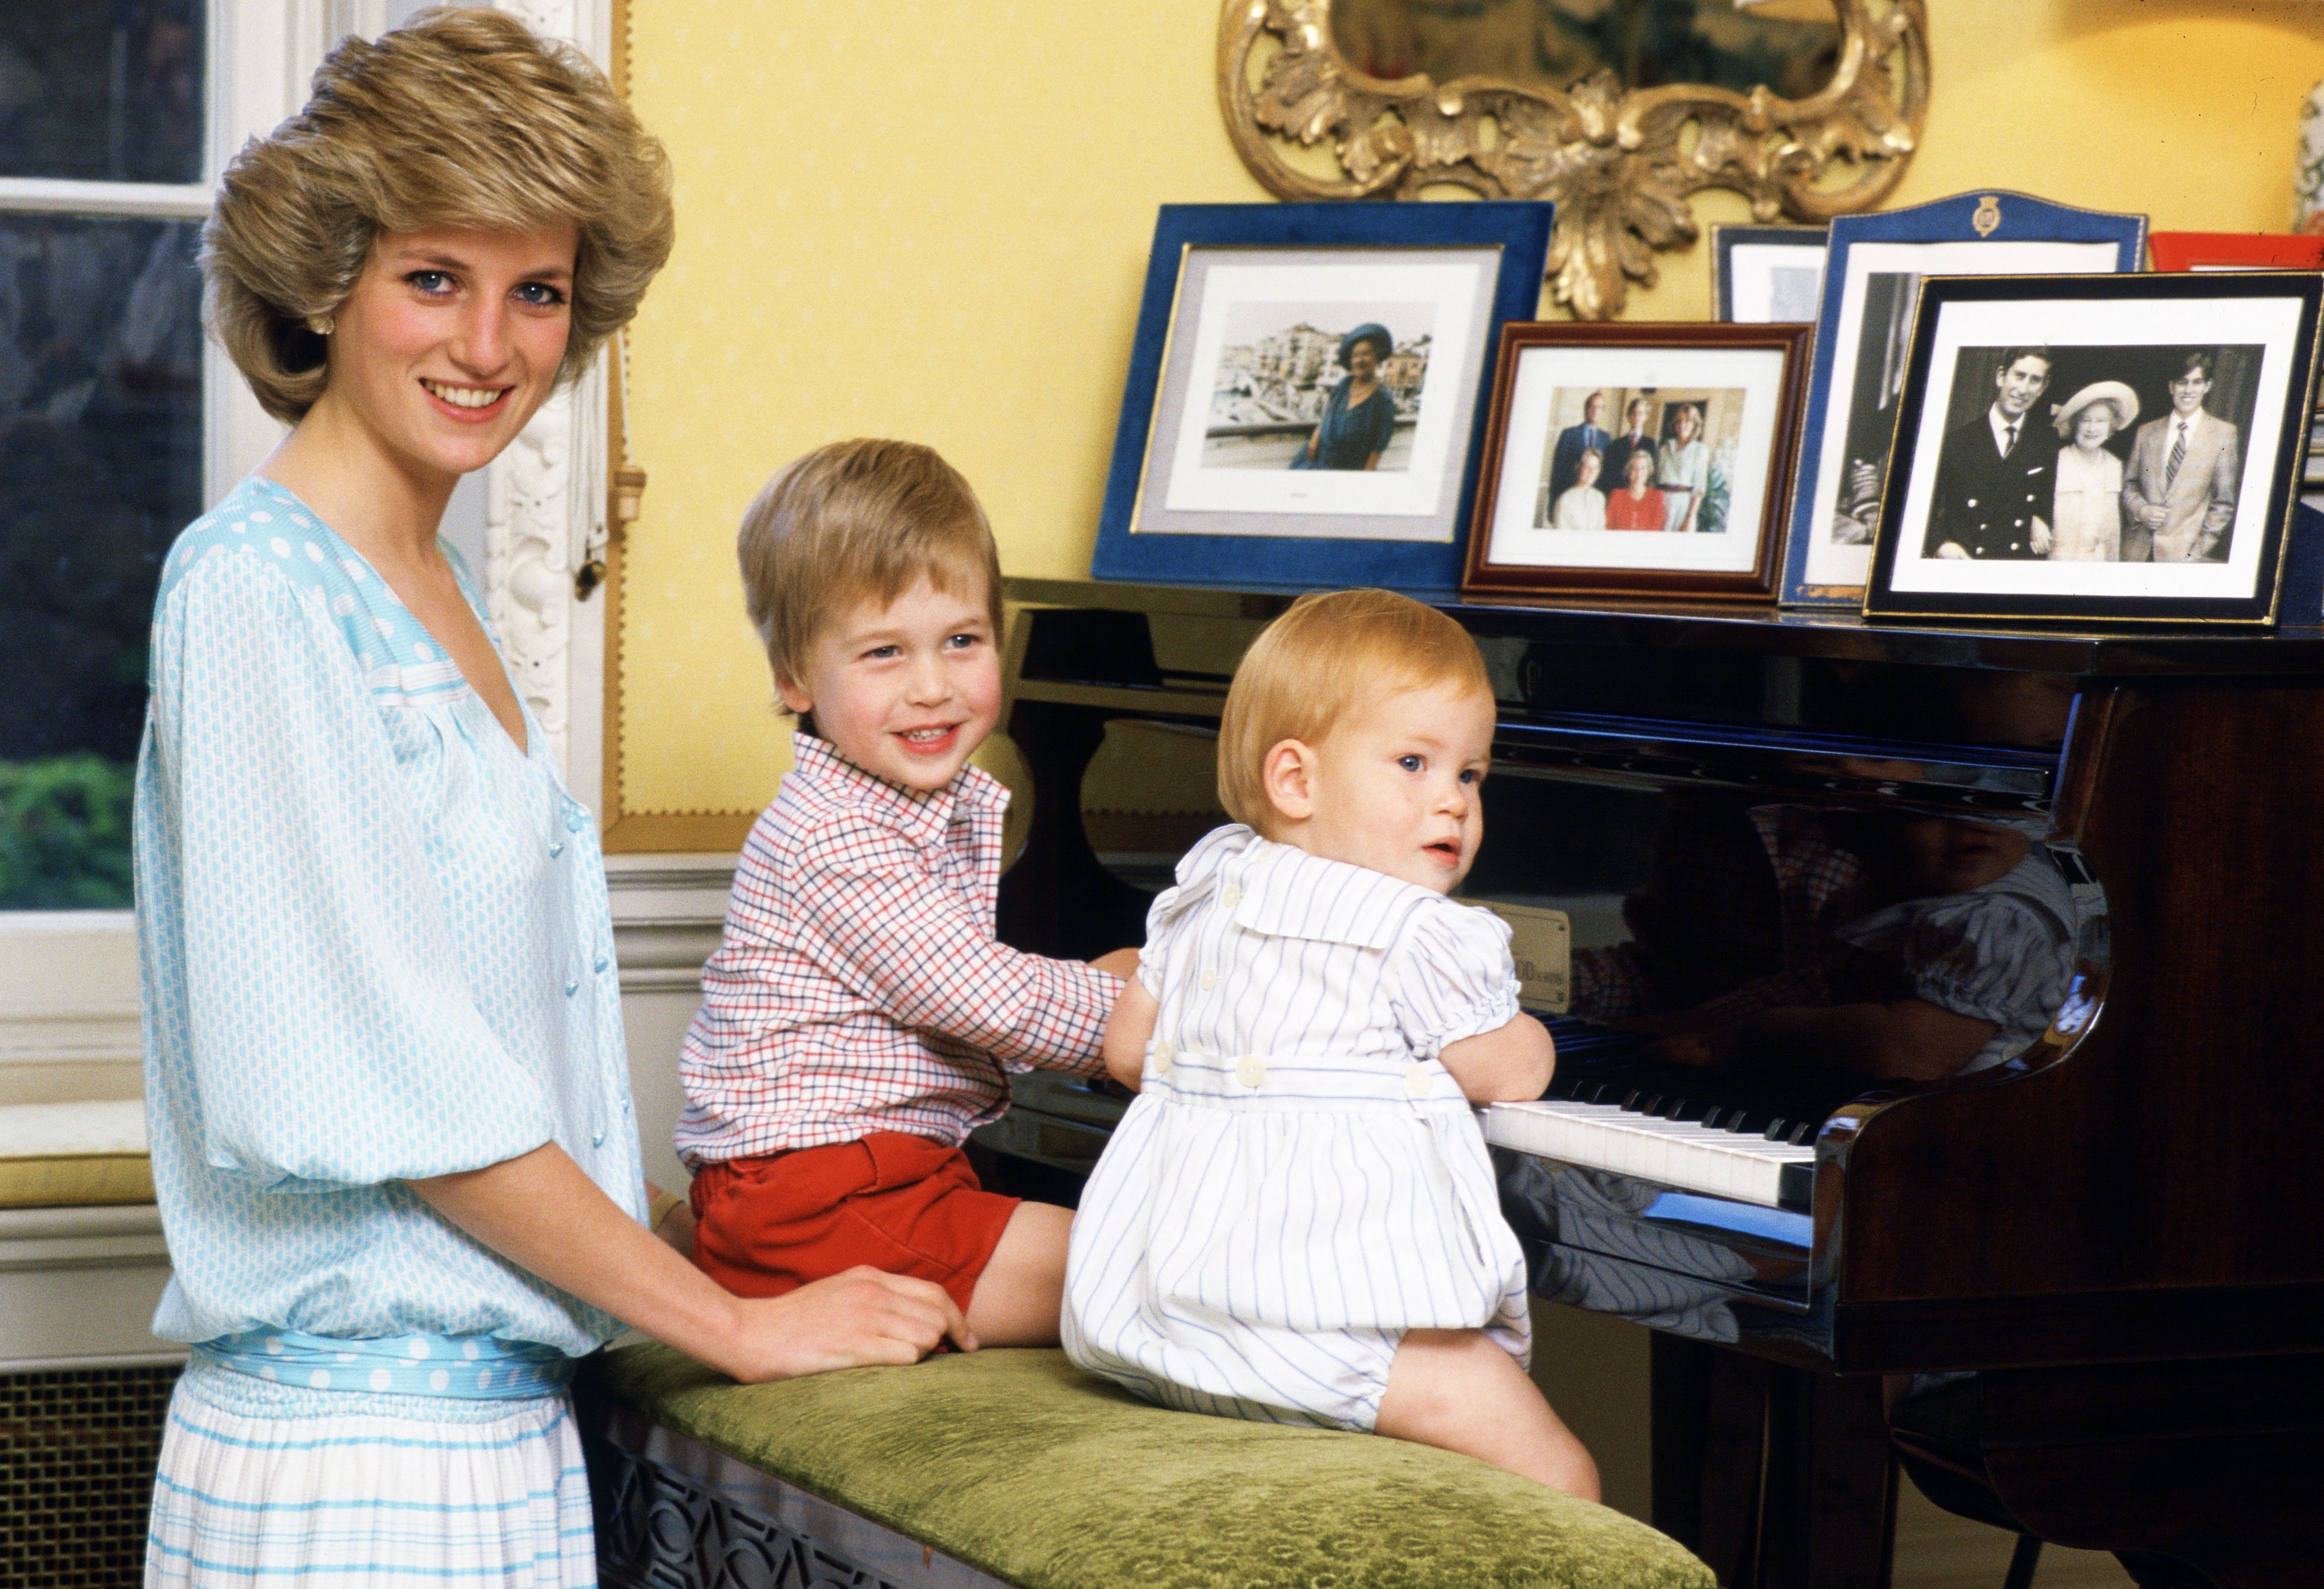 Diana, princesa de Gales, con sus hijos, el príncipe William y el príncipe Harry, tocando el piano en el palacio de Kensington. | Foto: Getty Images